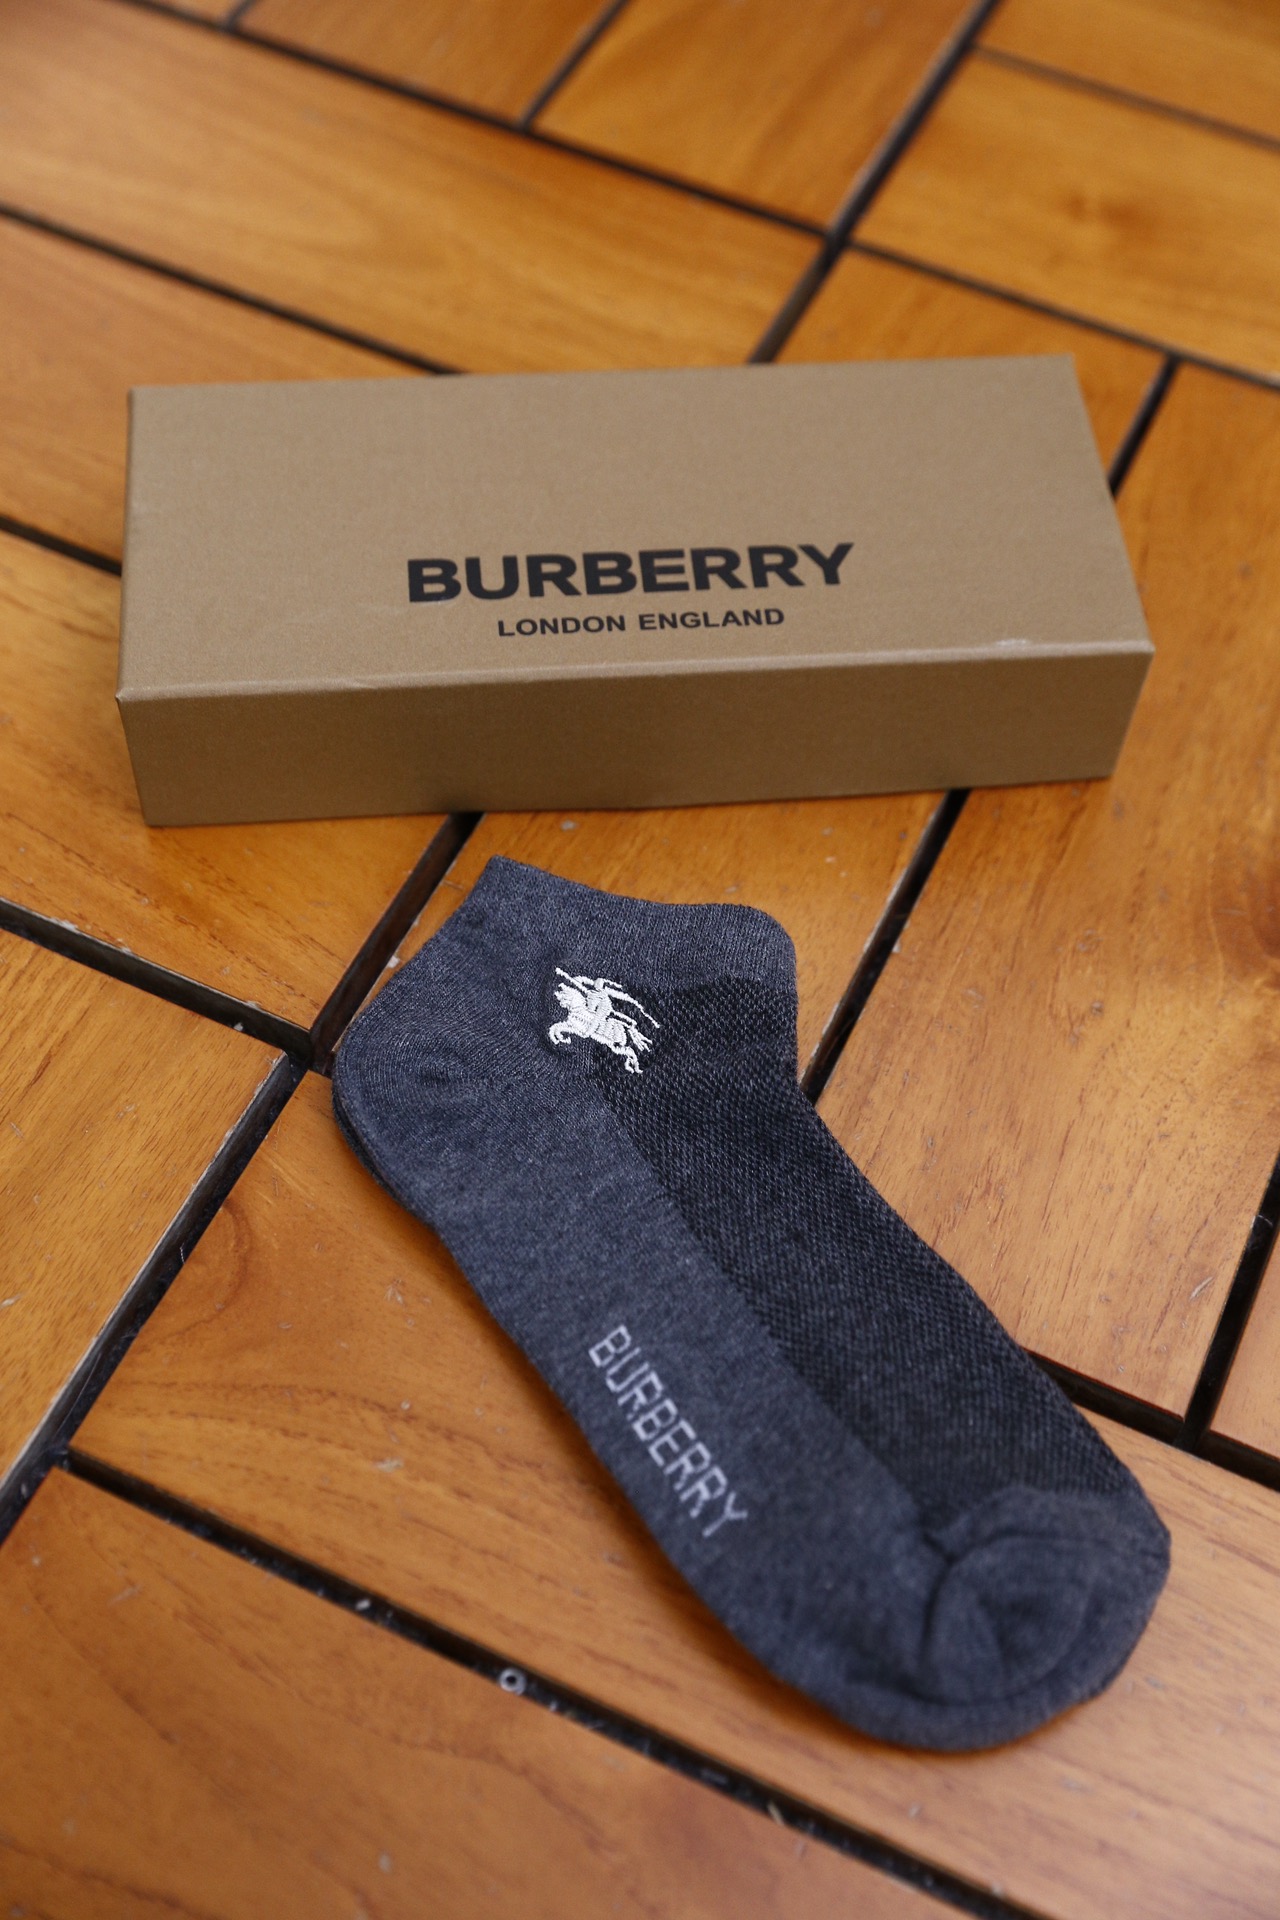 巴宝丽/Burb*rry.24新款袜子欧洲专柜出口订单吸汗透气防臭舒适袜子独家货源质量超赞是自己穿着送礼